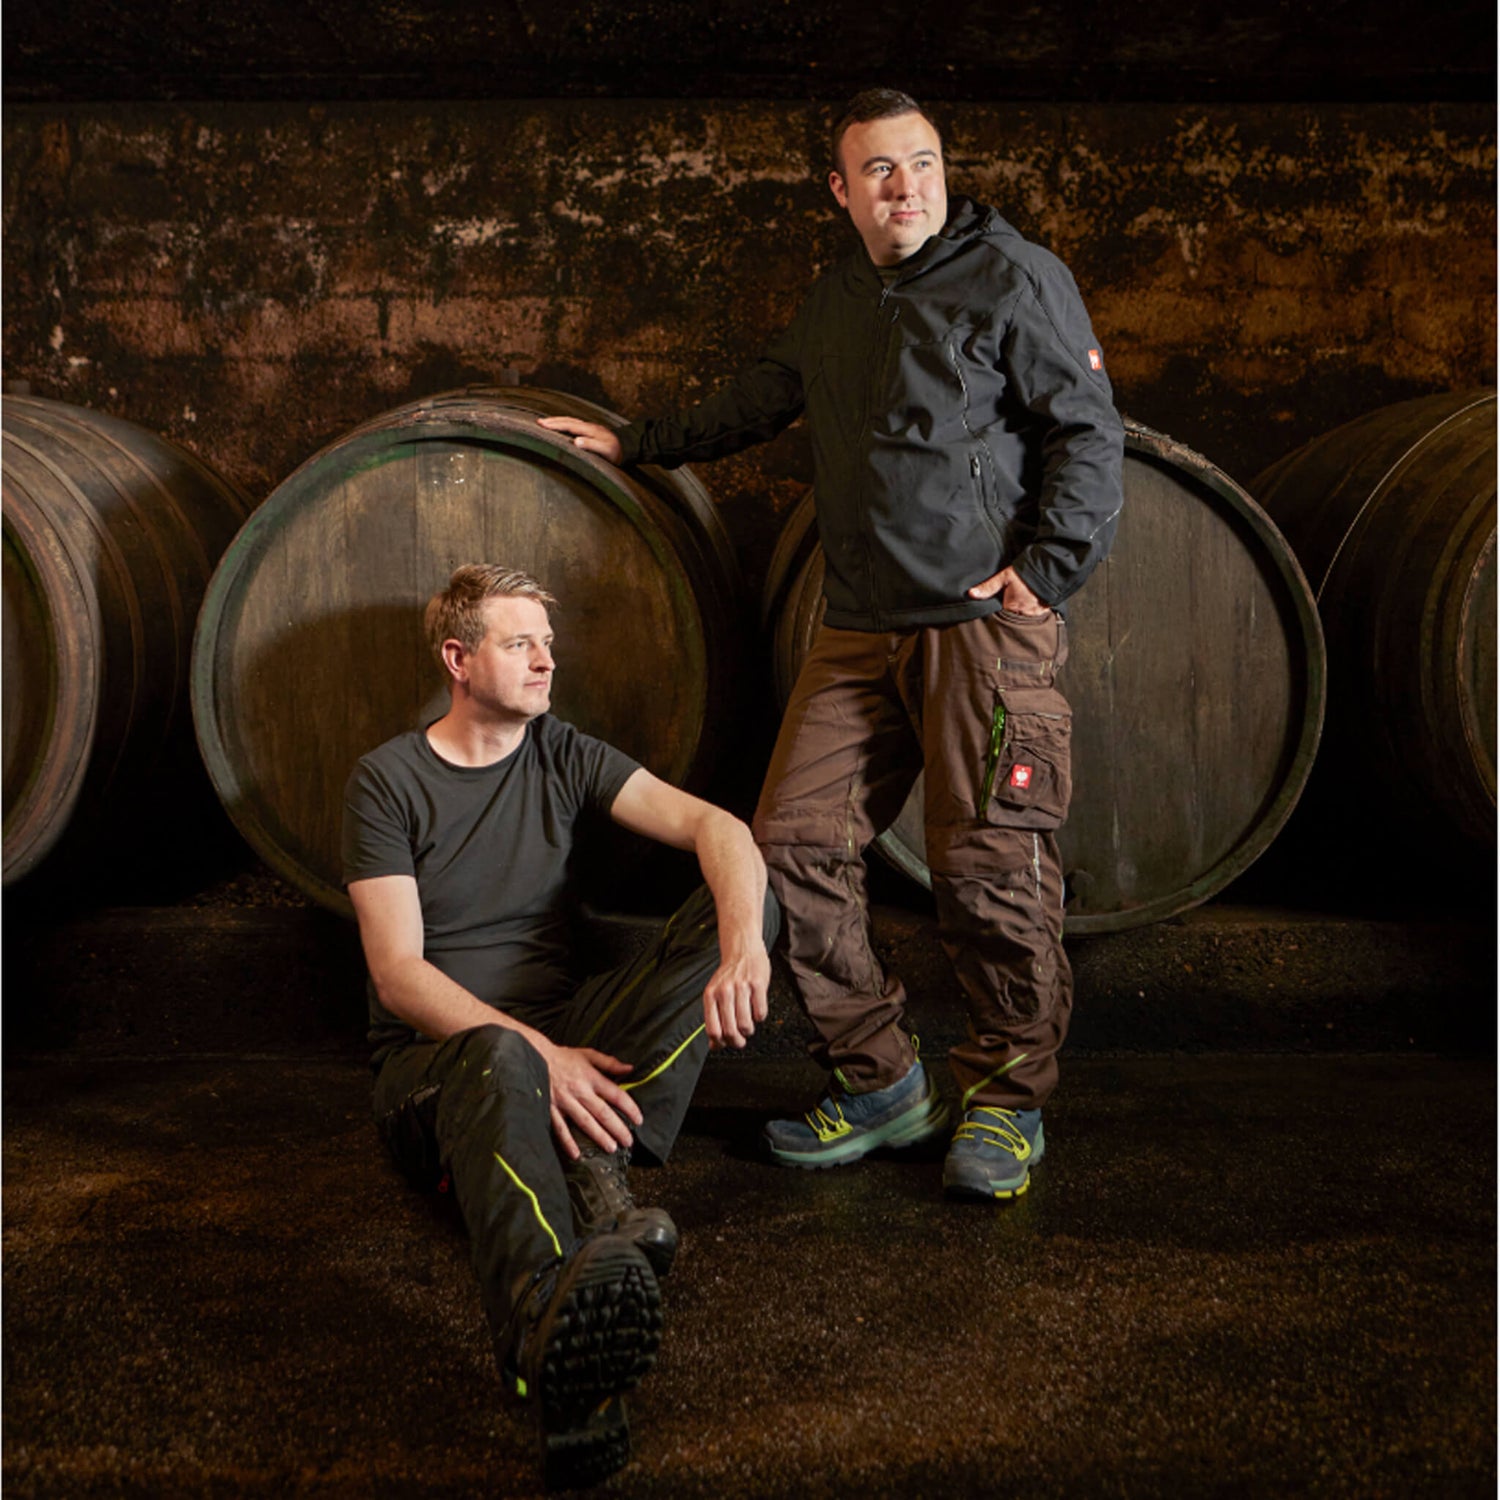 Corvin Prigge und Florian Maring vor Holzfuderfässern sitzen / stehend im Weinkeller